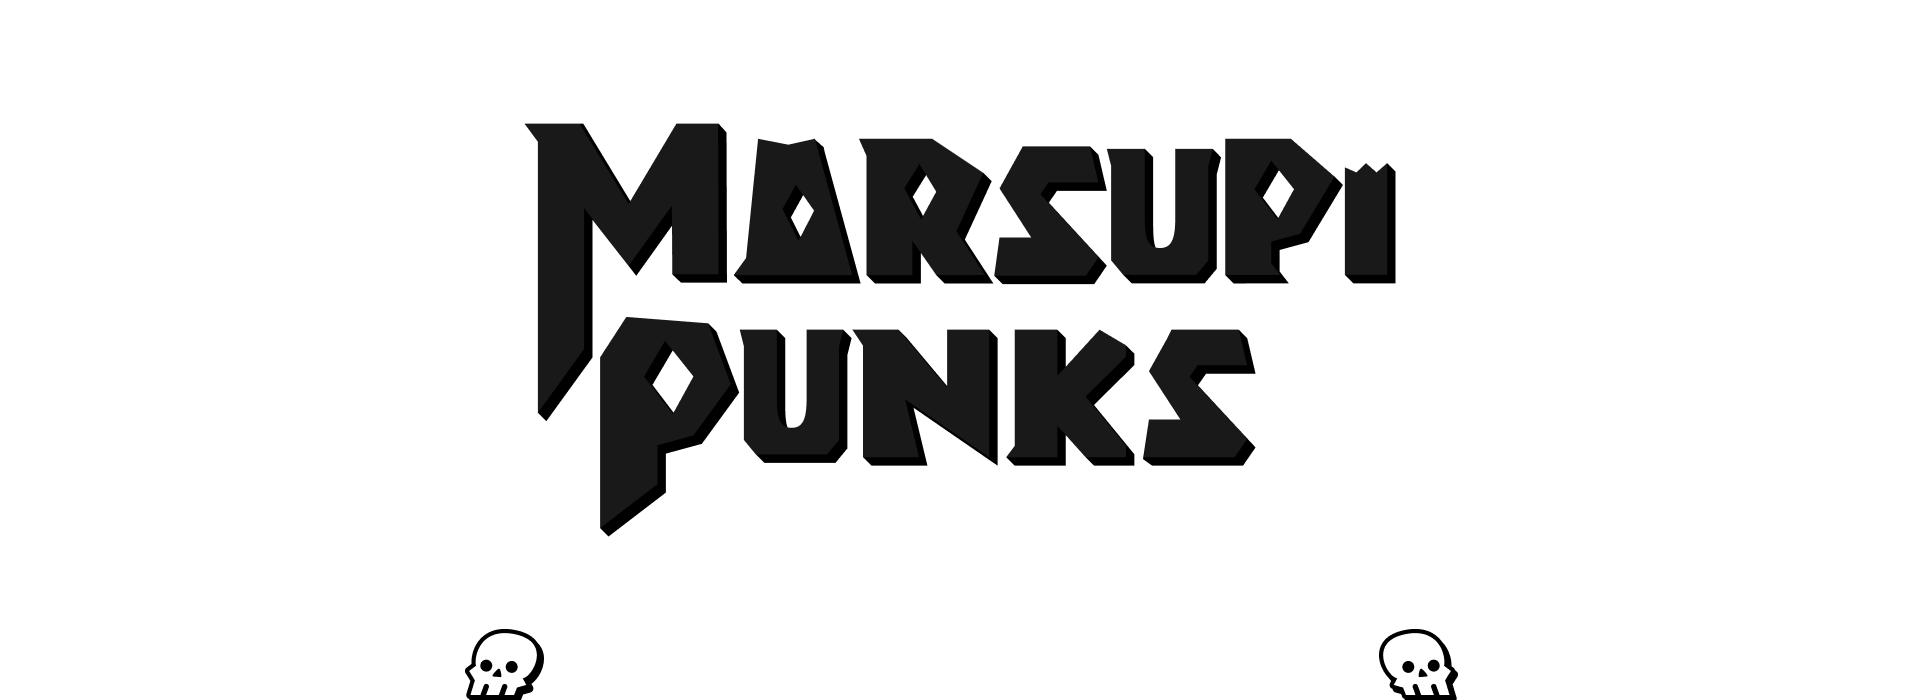 Marsupipunks: o preço de uma alma